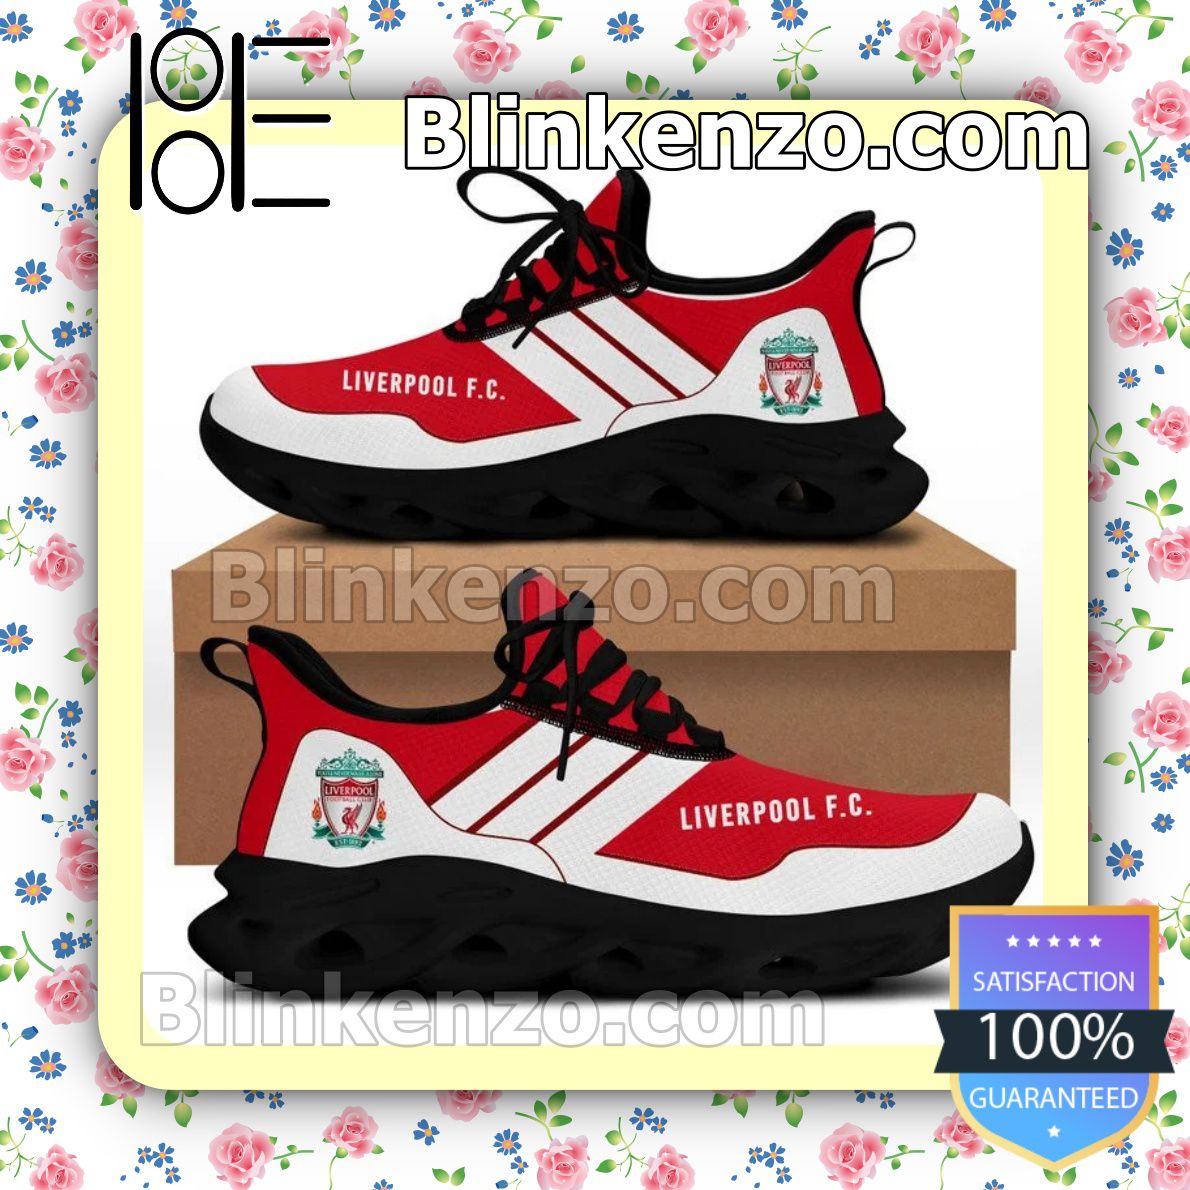 Liverpool FC Men Running Shoes - Blinkenzo